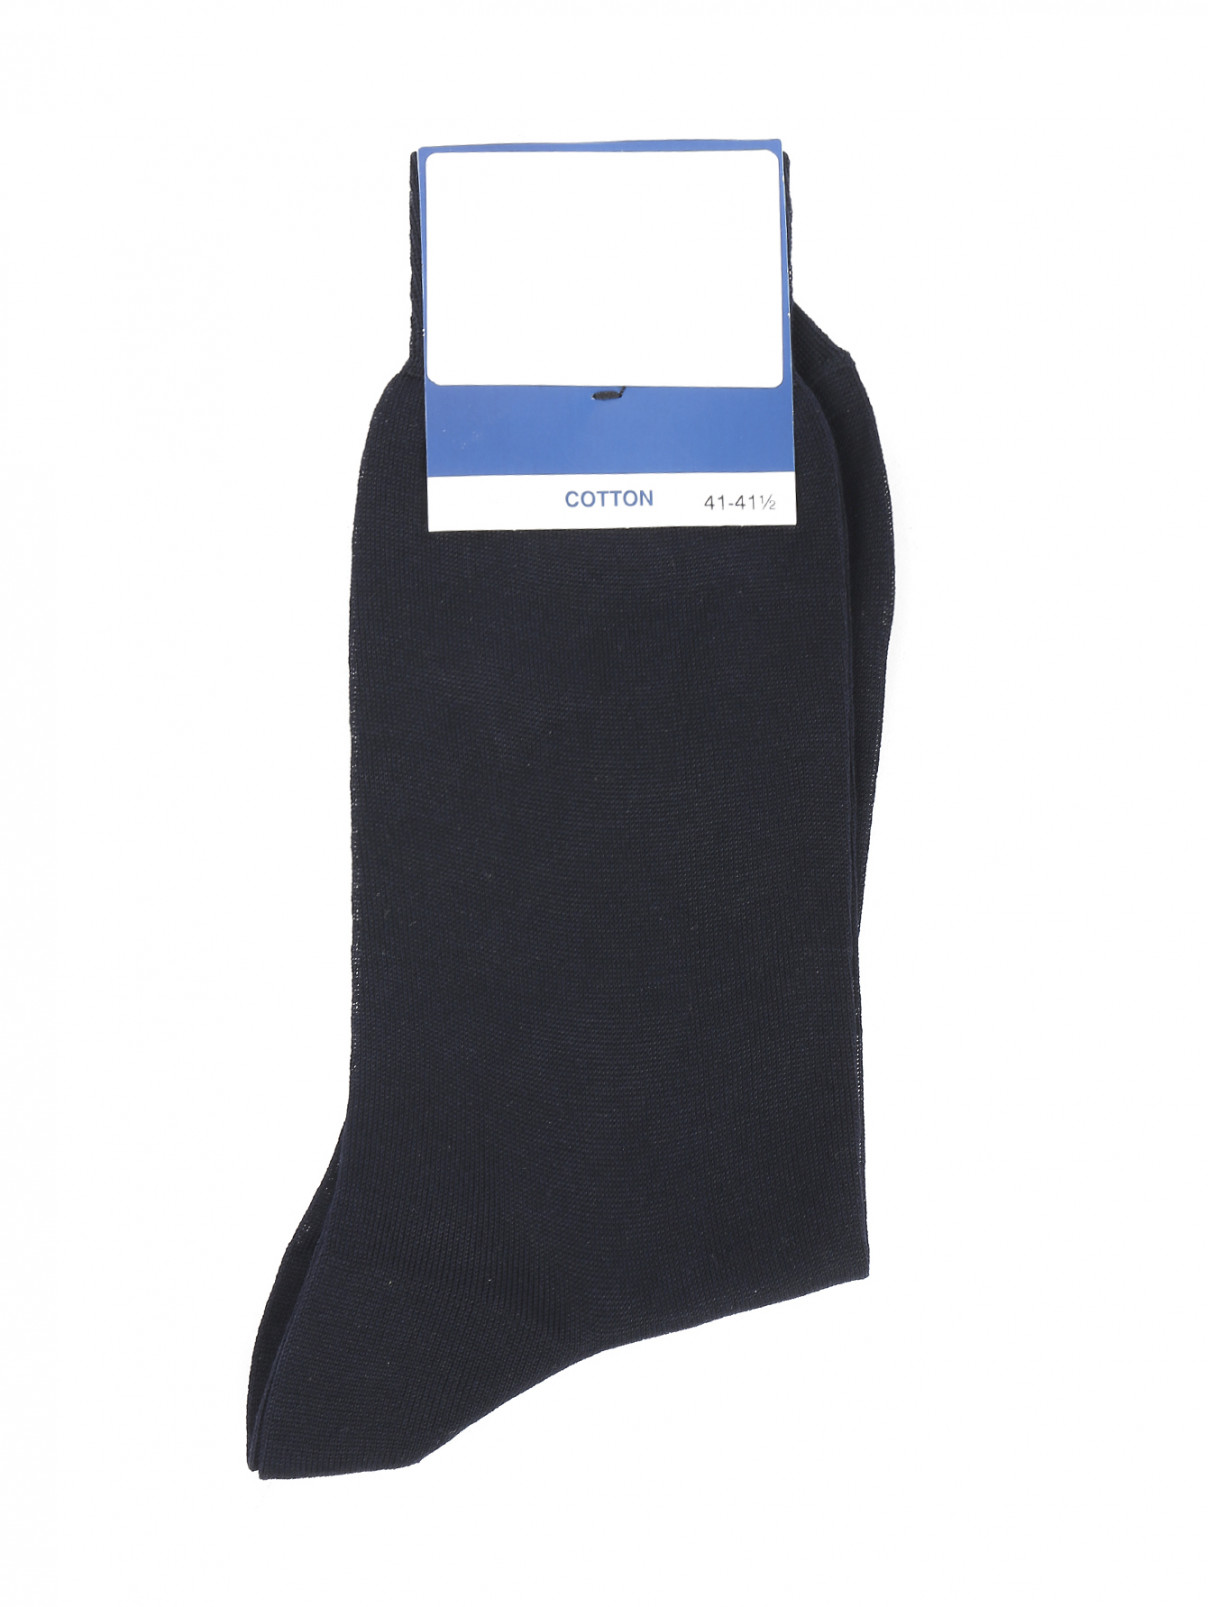 Носки из хлопка Nero Perla  –  Общий вид  – Цвет:  Синий